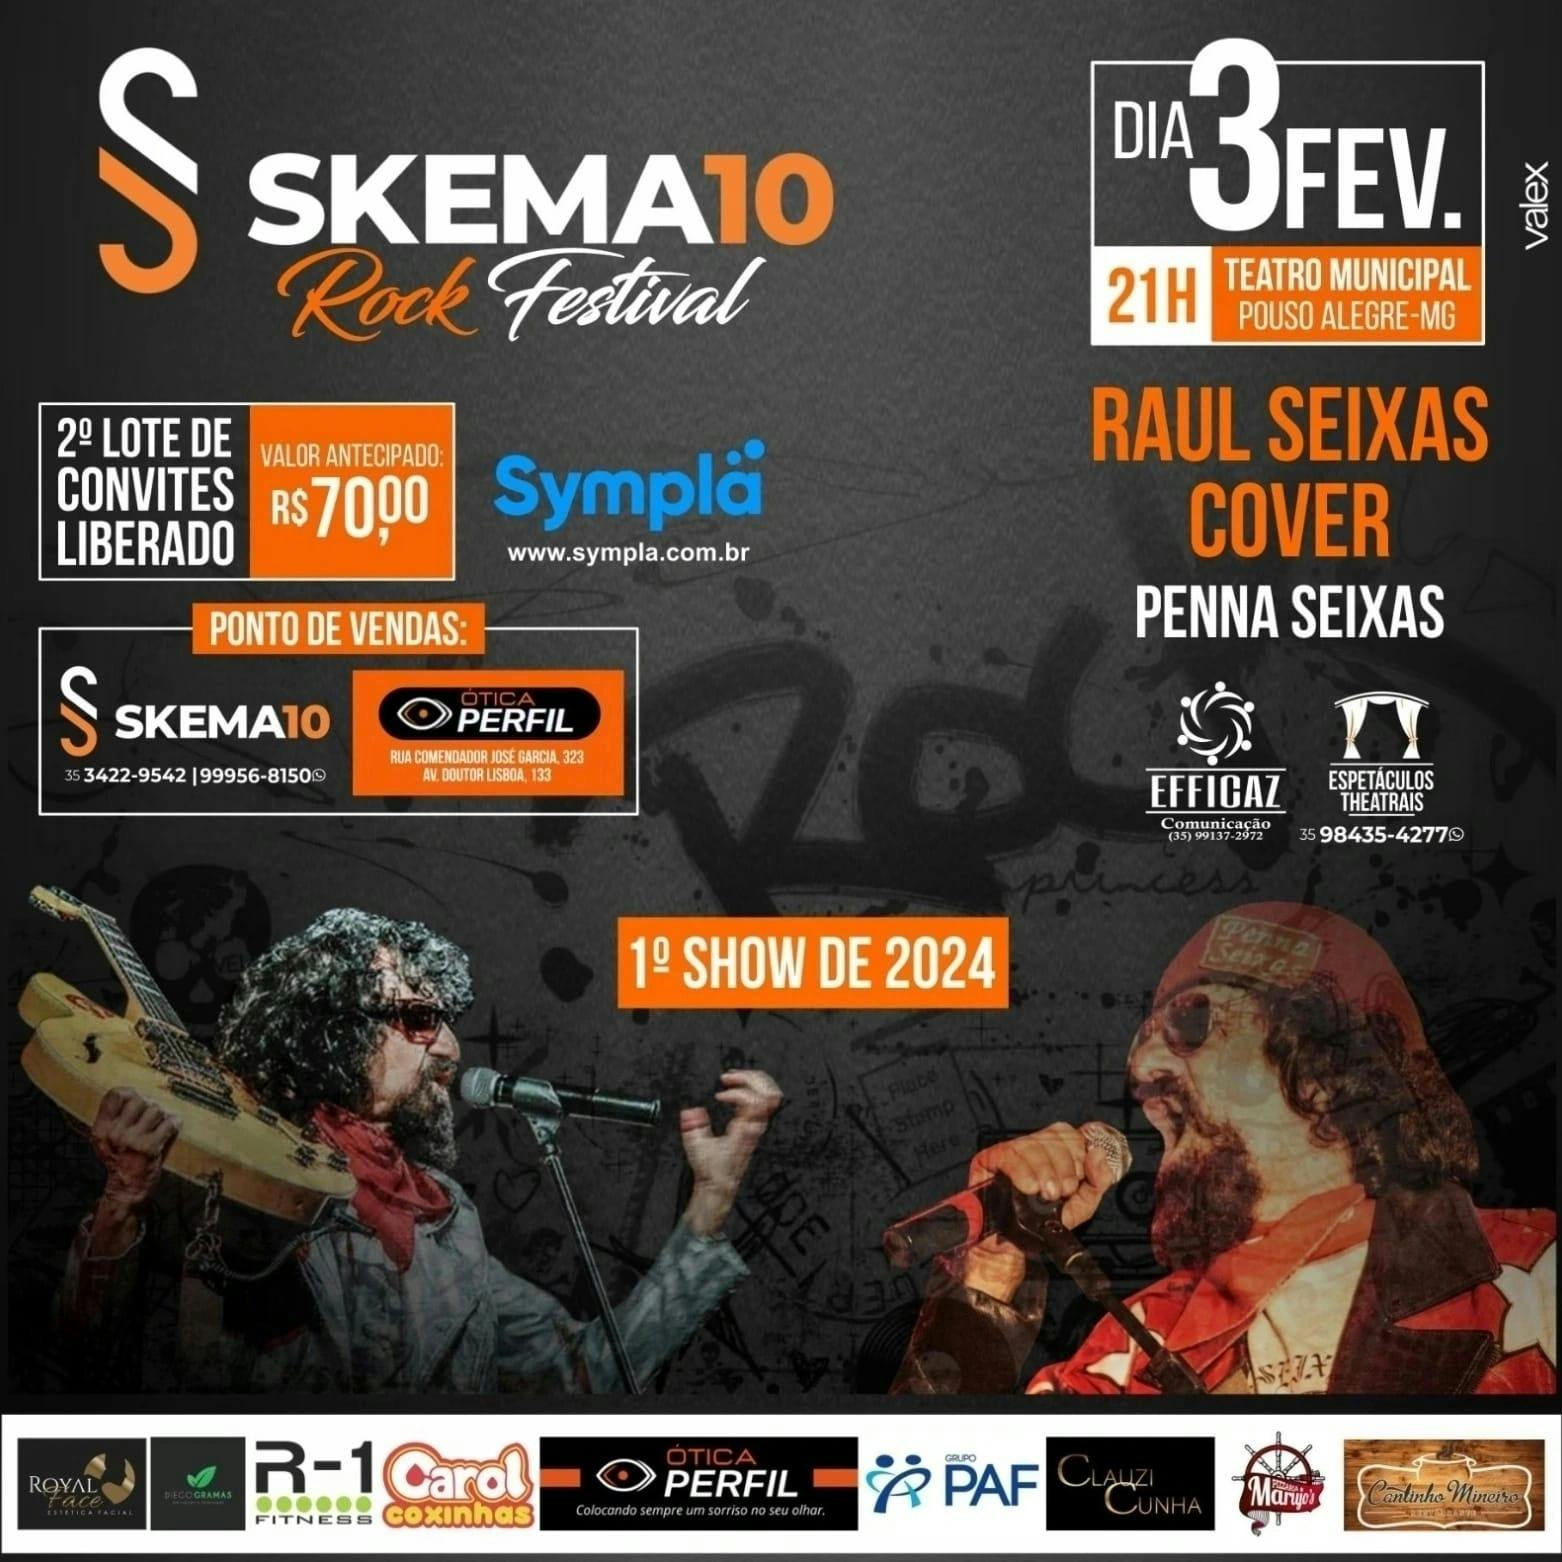 SKEMA10 ROCK FESTIVAL - Raul Seixas Cover (By: Penna Seixas)